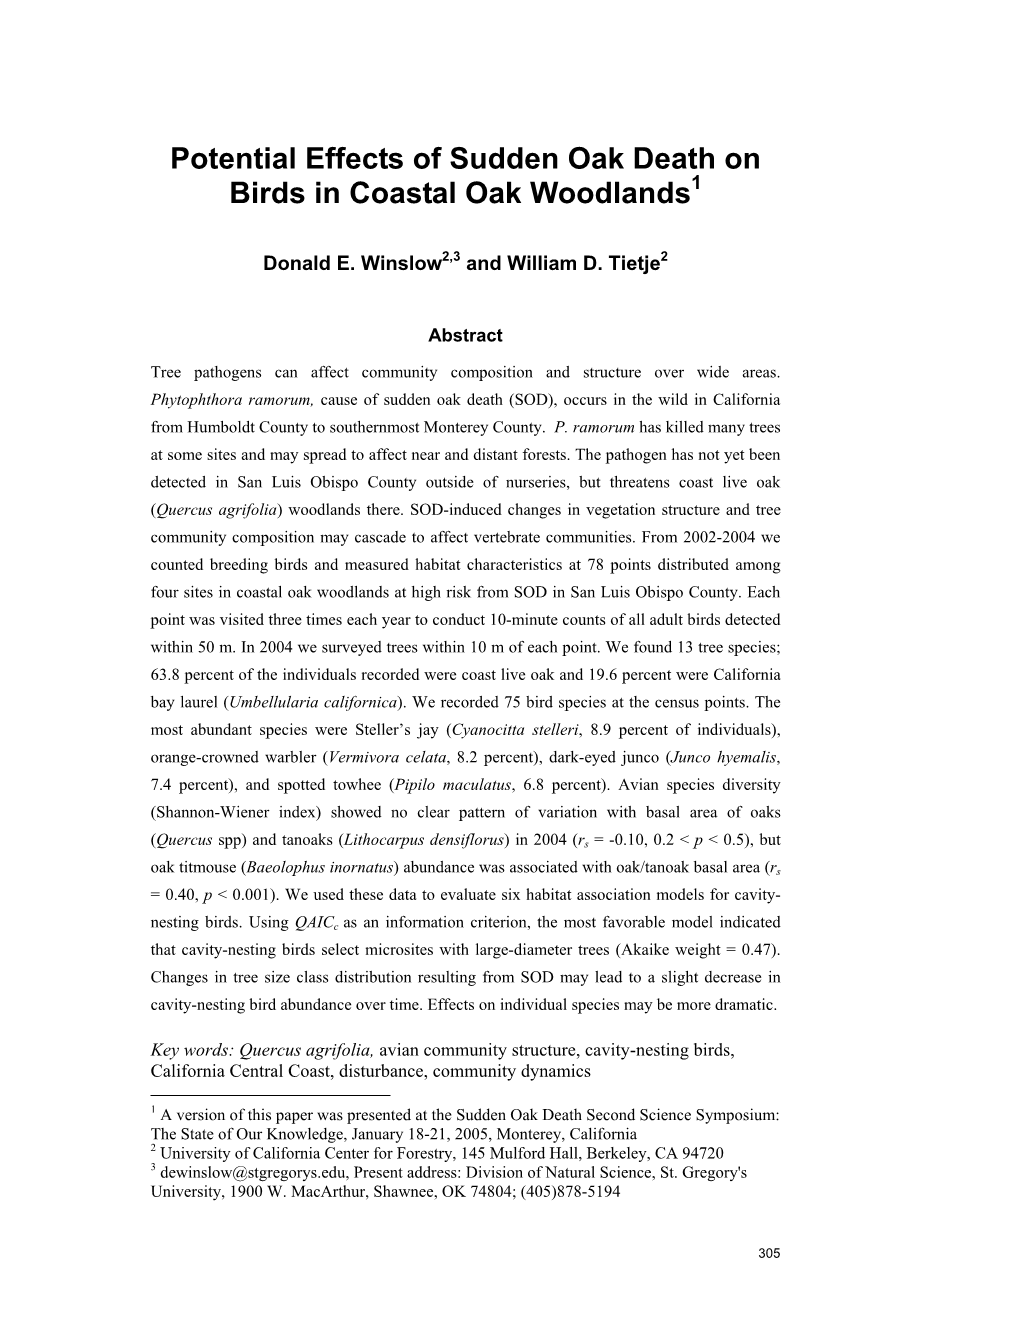 Potential Effects of Sudden Oak Death on Birds in Coastal Oak Woodlands1